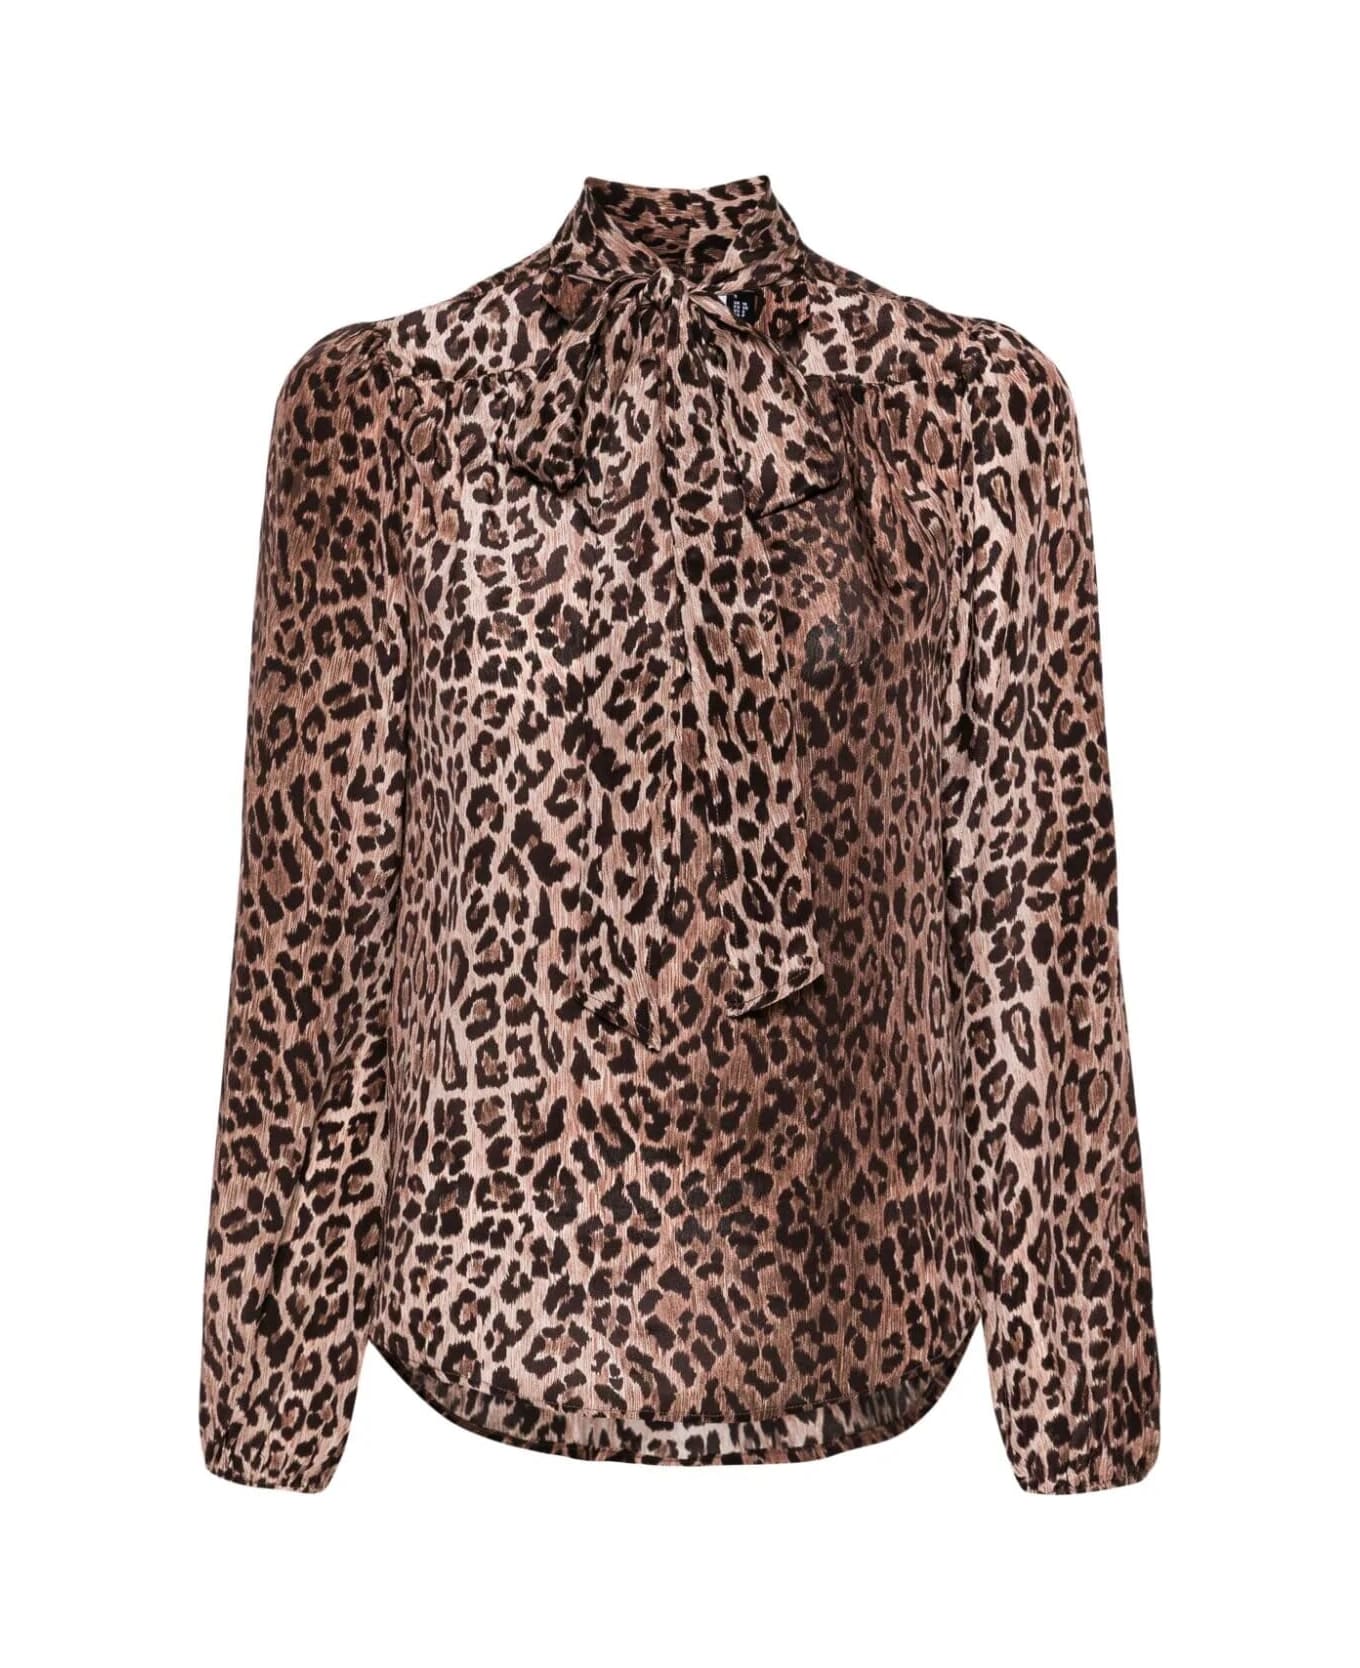 RIXO Camicia Con Sciarpa - Leopard ブラウス